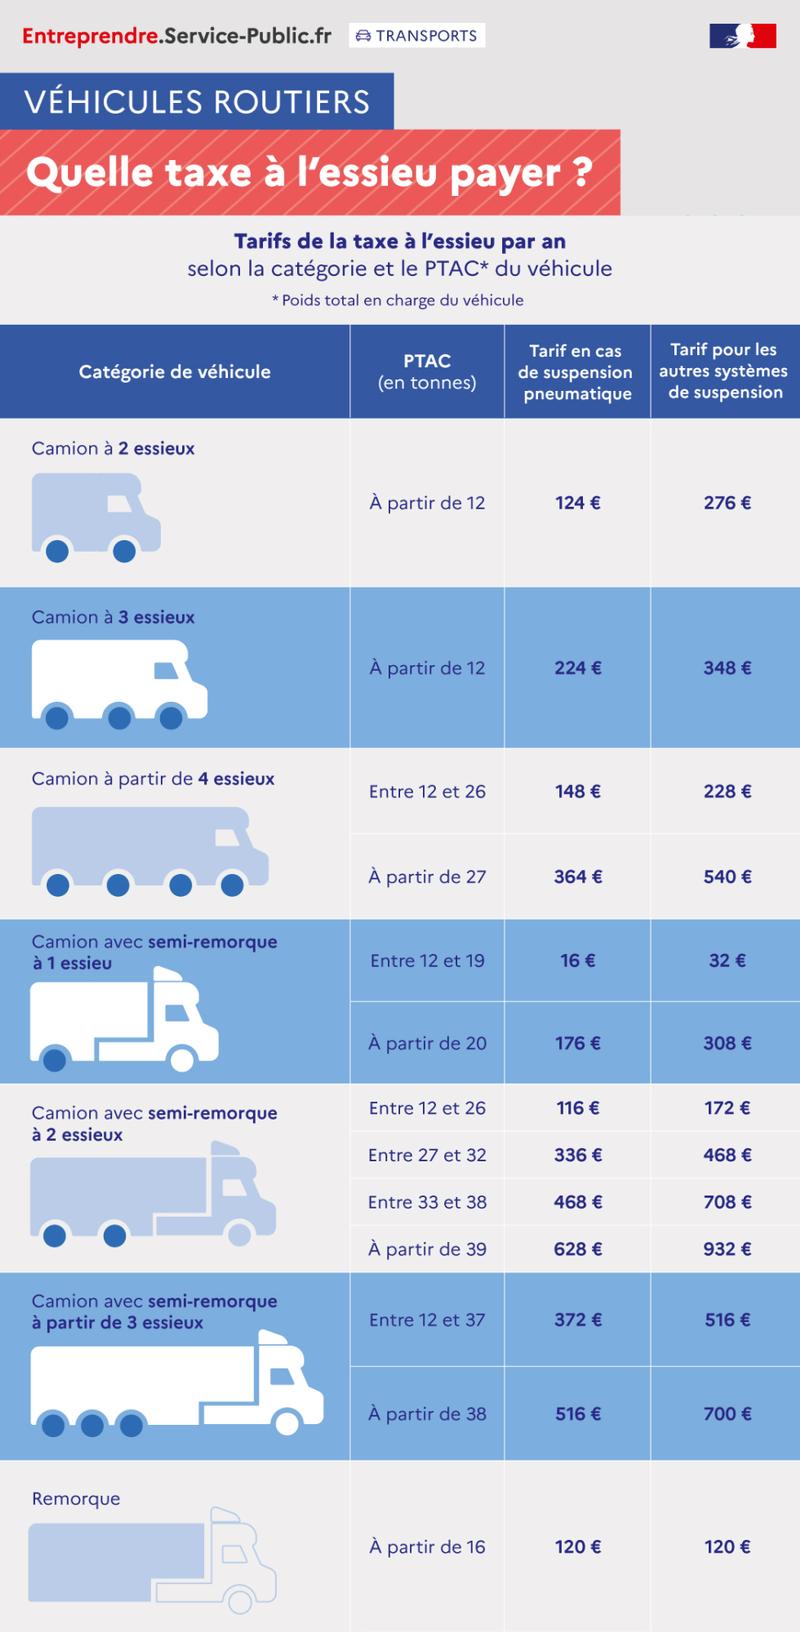 Montants de la taxe annuelle sur les véhicules lourds de transport de marchandises (ancienne taxe à l'essieu) en euros définis pour une année civile, en fonction de la catégorie de véhicule, de son poids en tonnes et du type de suspension (pneumatique ou autre) - plus de détails dans le texte suivant l'infographie